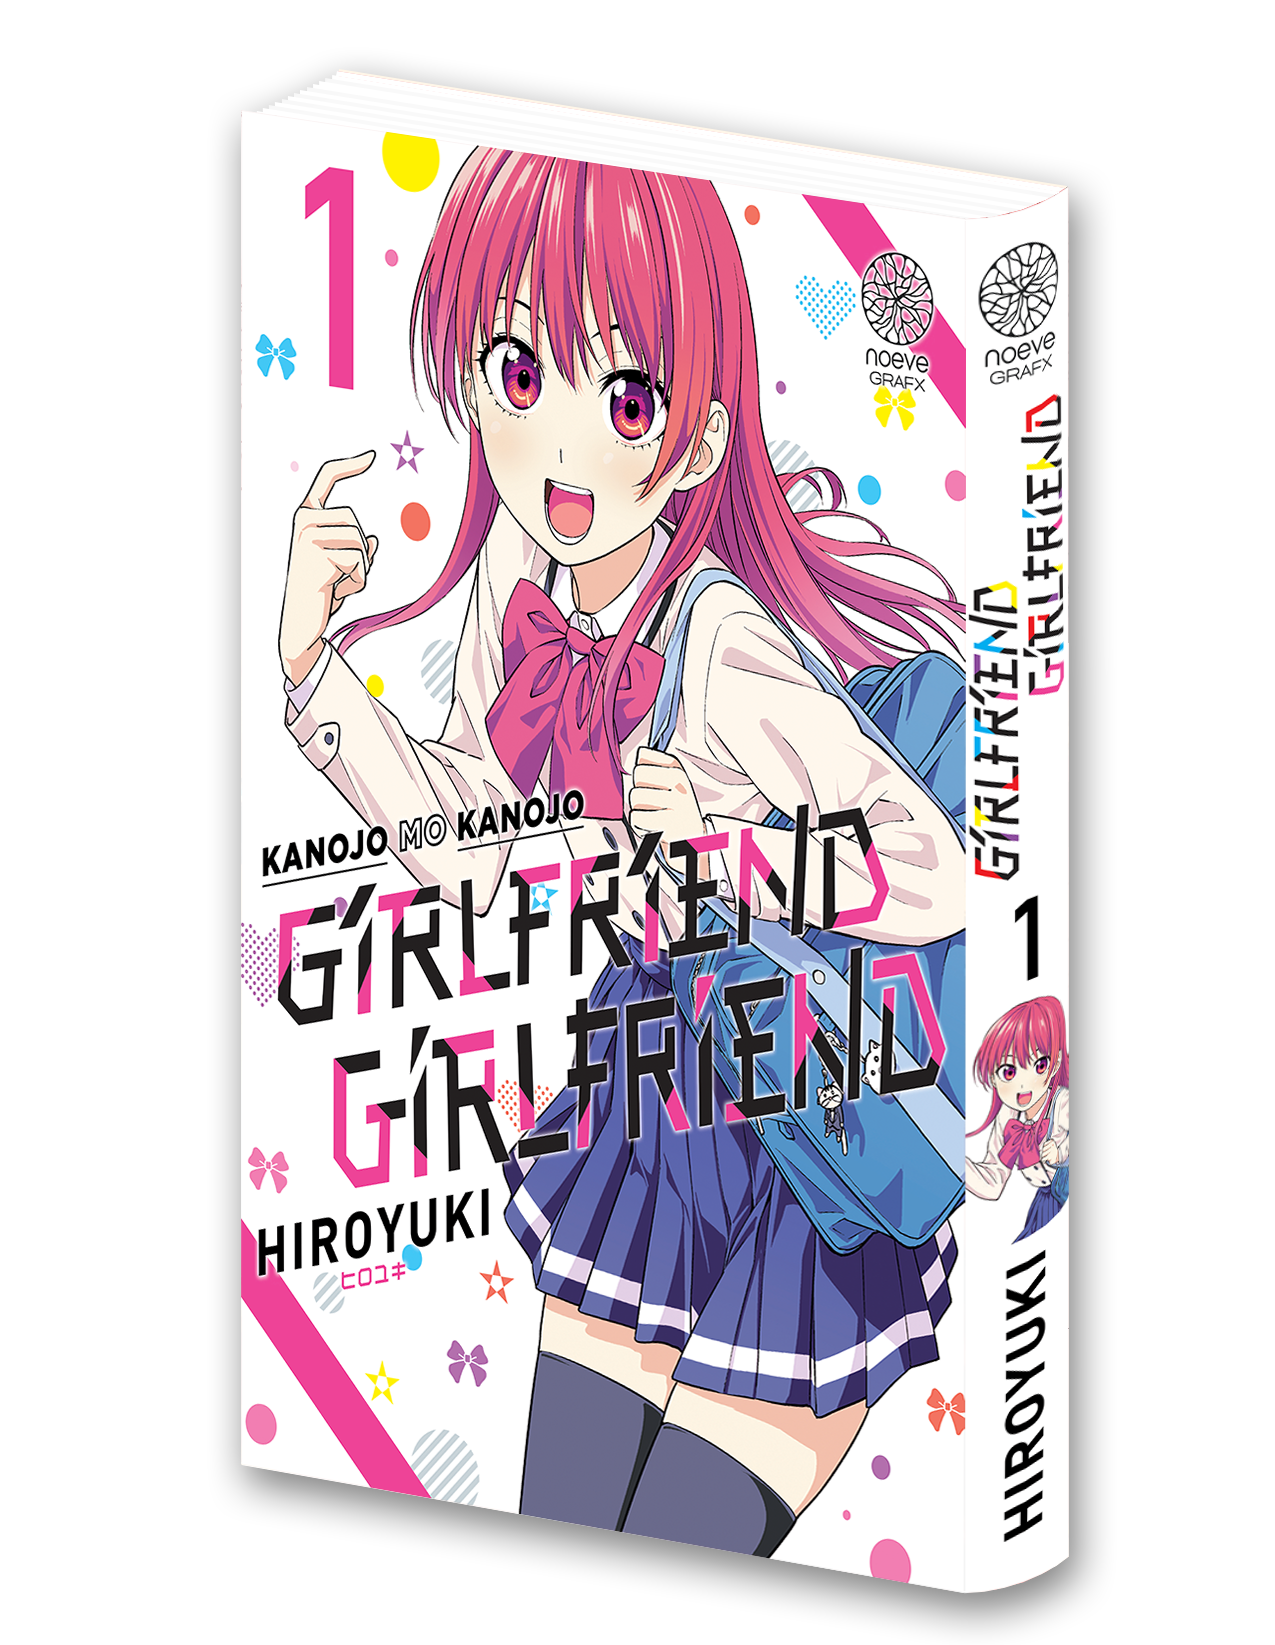 Visuel 3D du manga Girlfriend Girlfriend